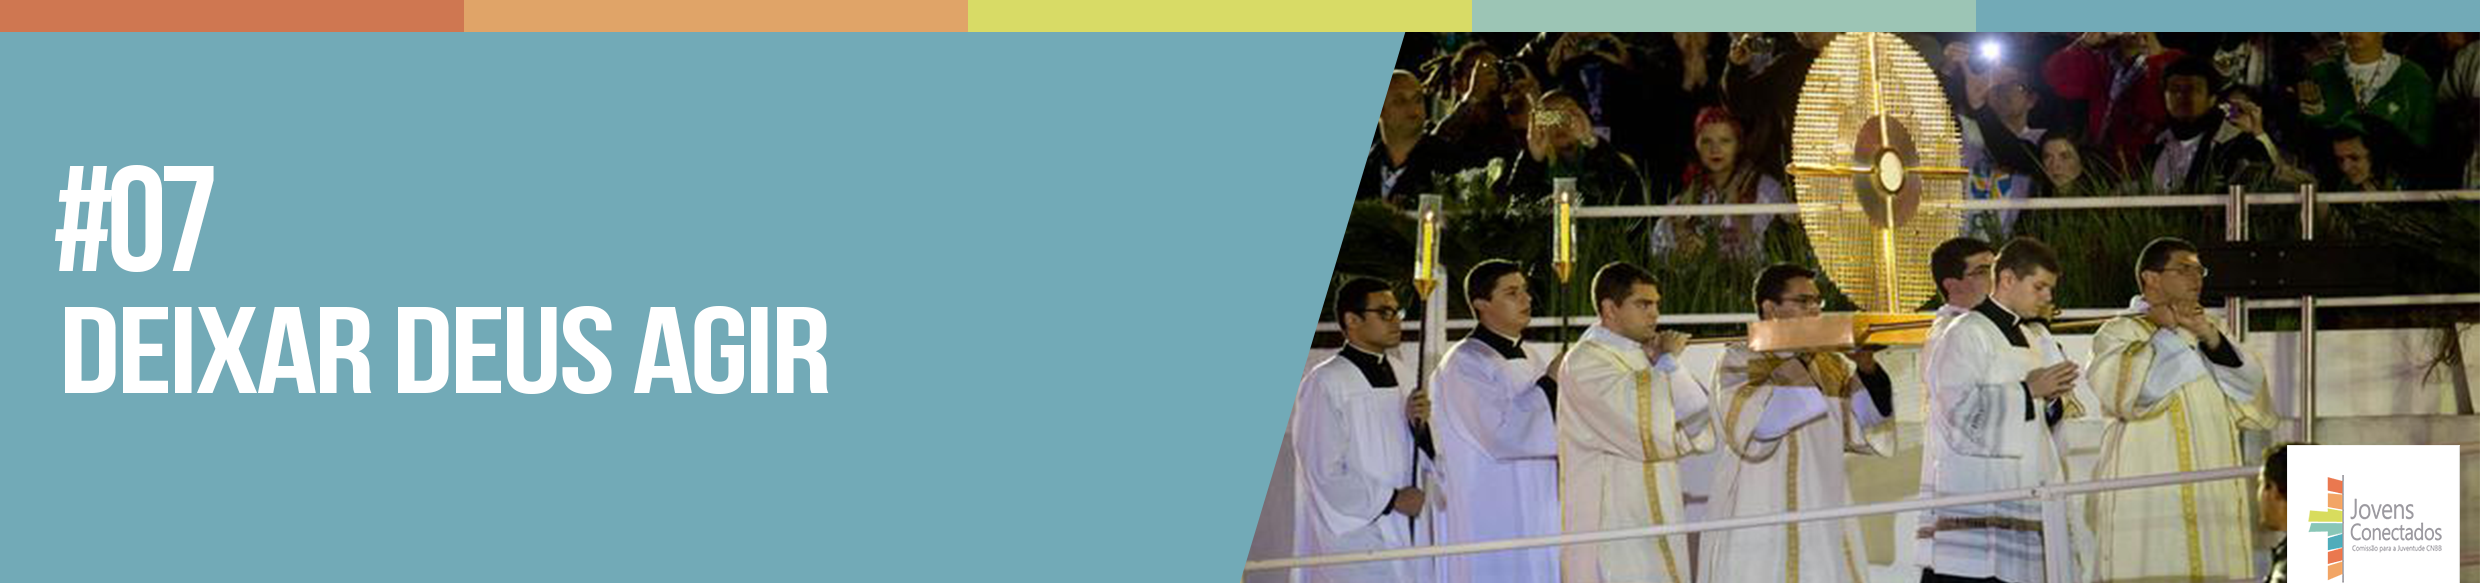 15 Frases Marcantes Do Papa Francisco No Brasil Jovens Conectados